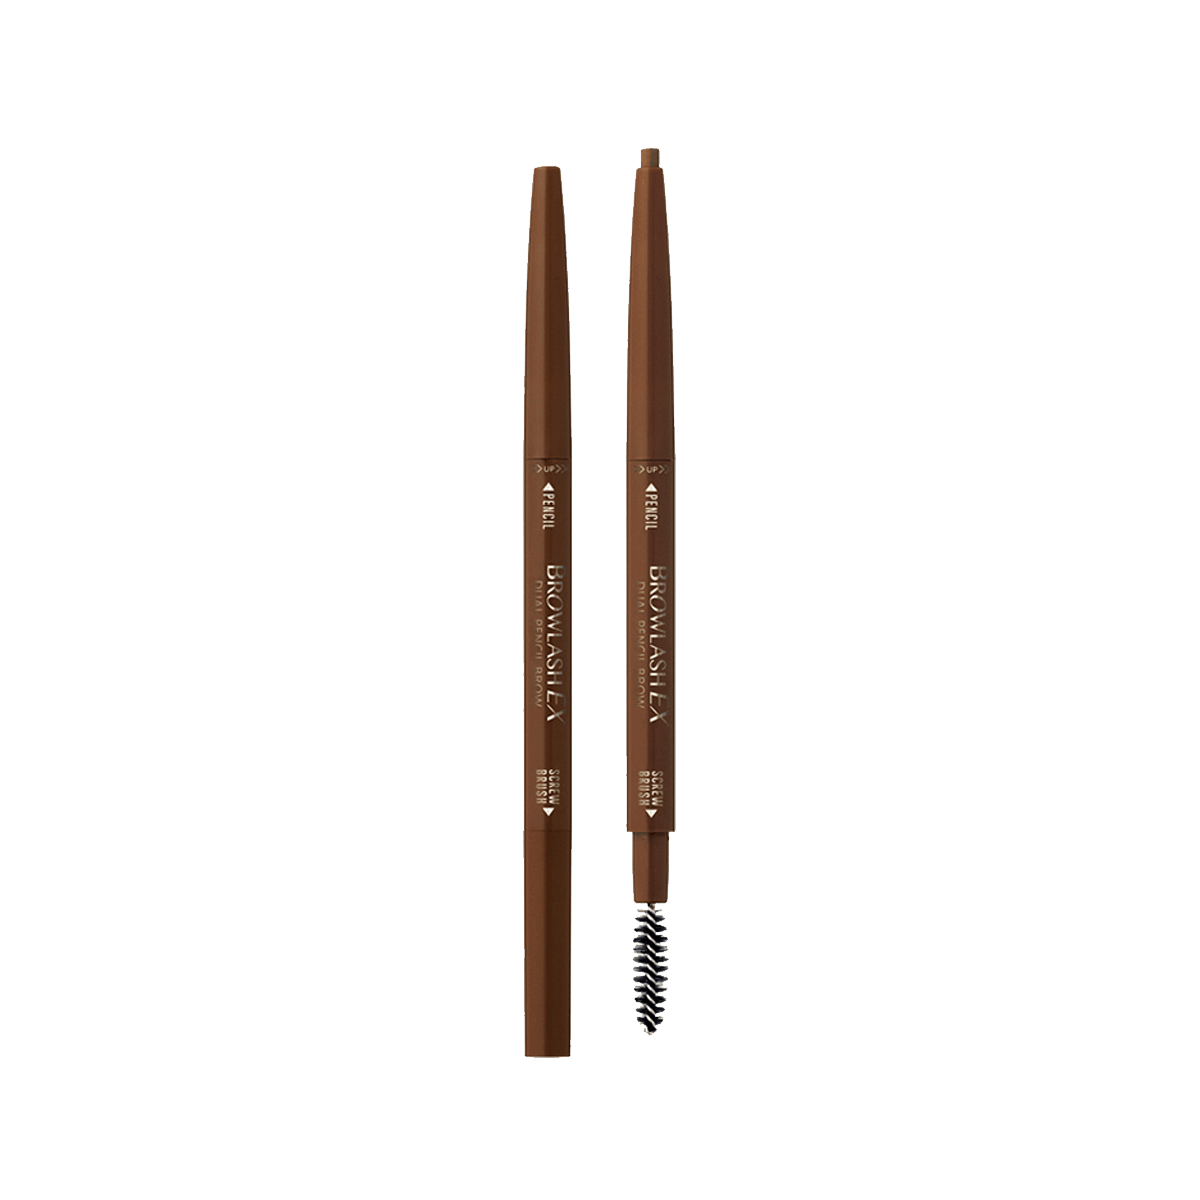 日本BCL BROWLASH EX 双头双色笔芯眉笔 02灰褐色 怎么样 - 亚米网